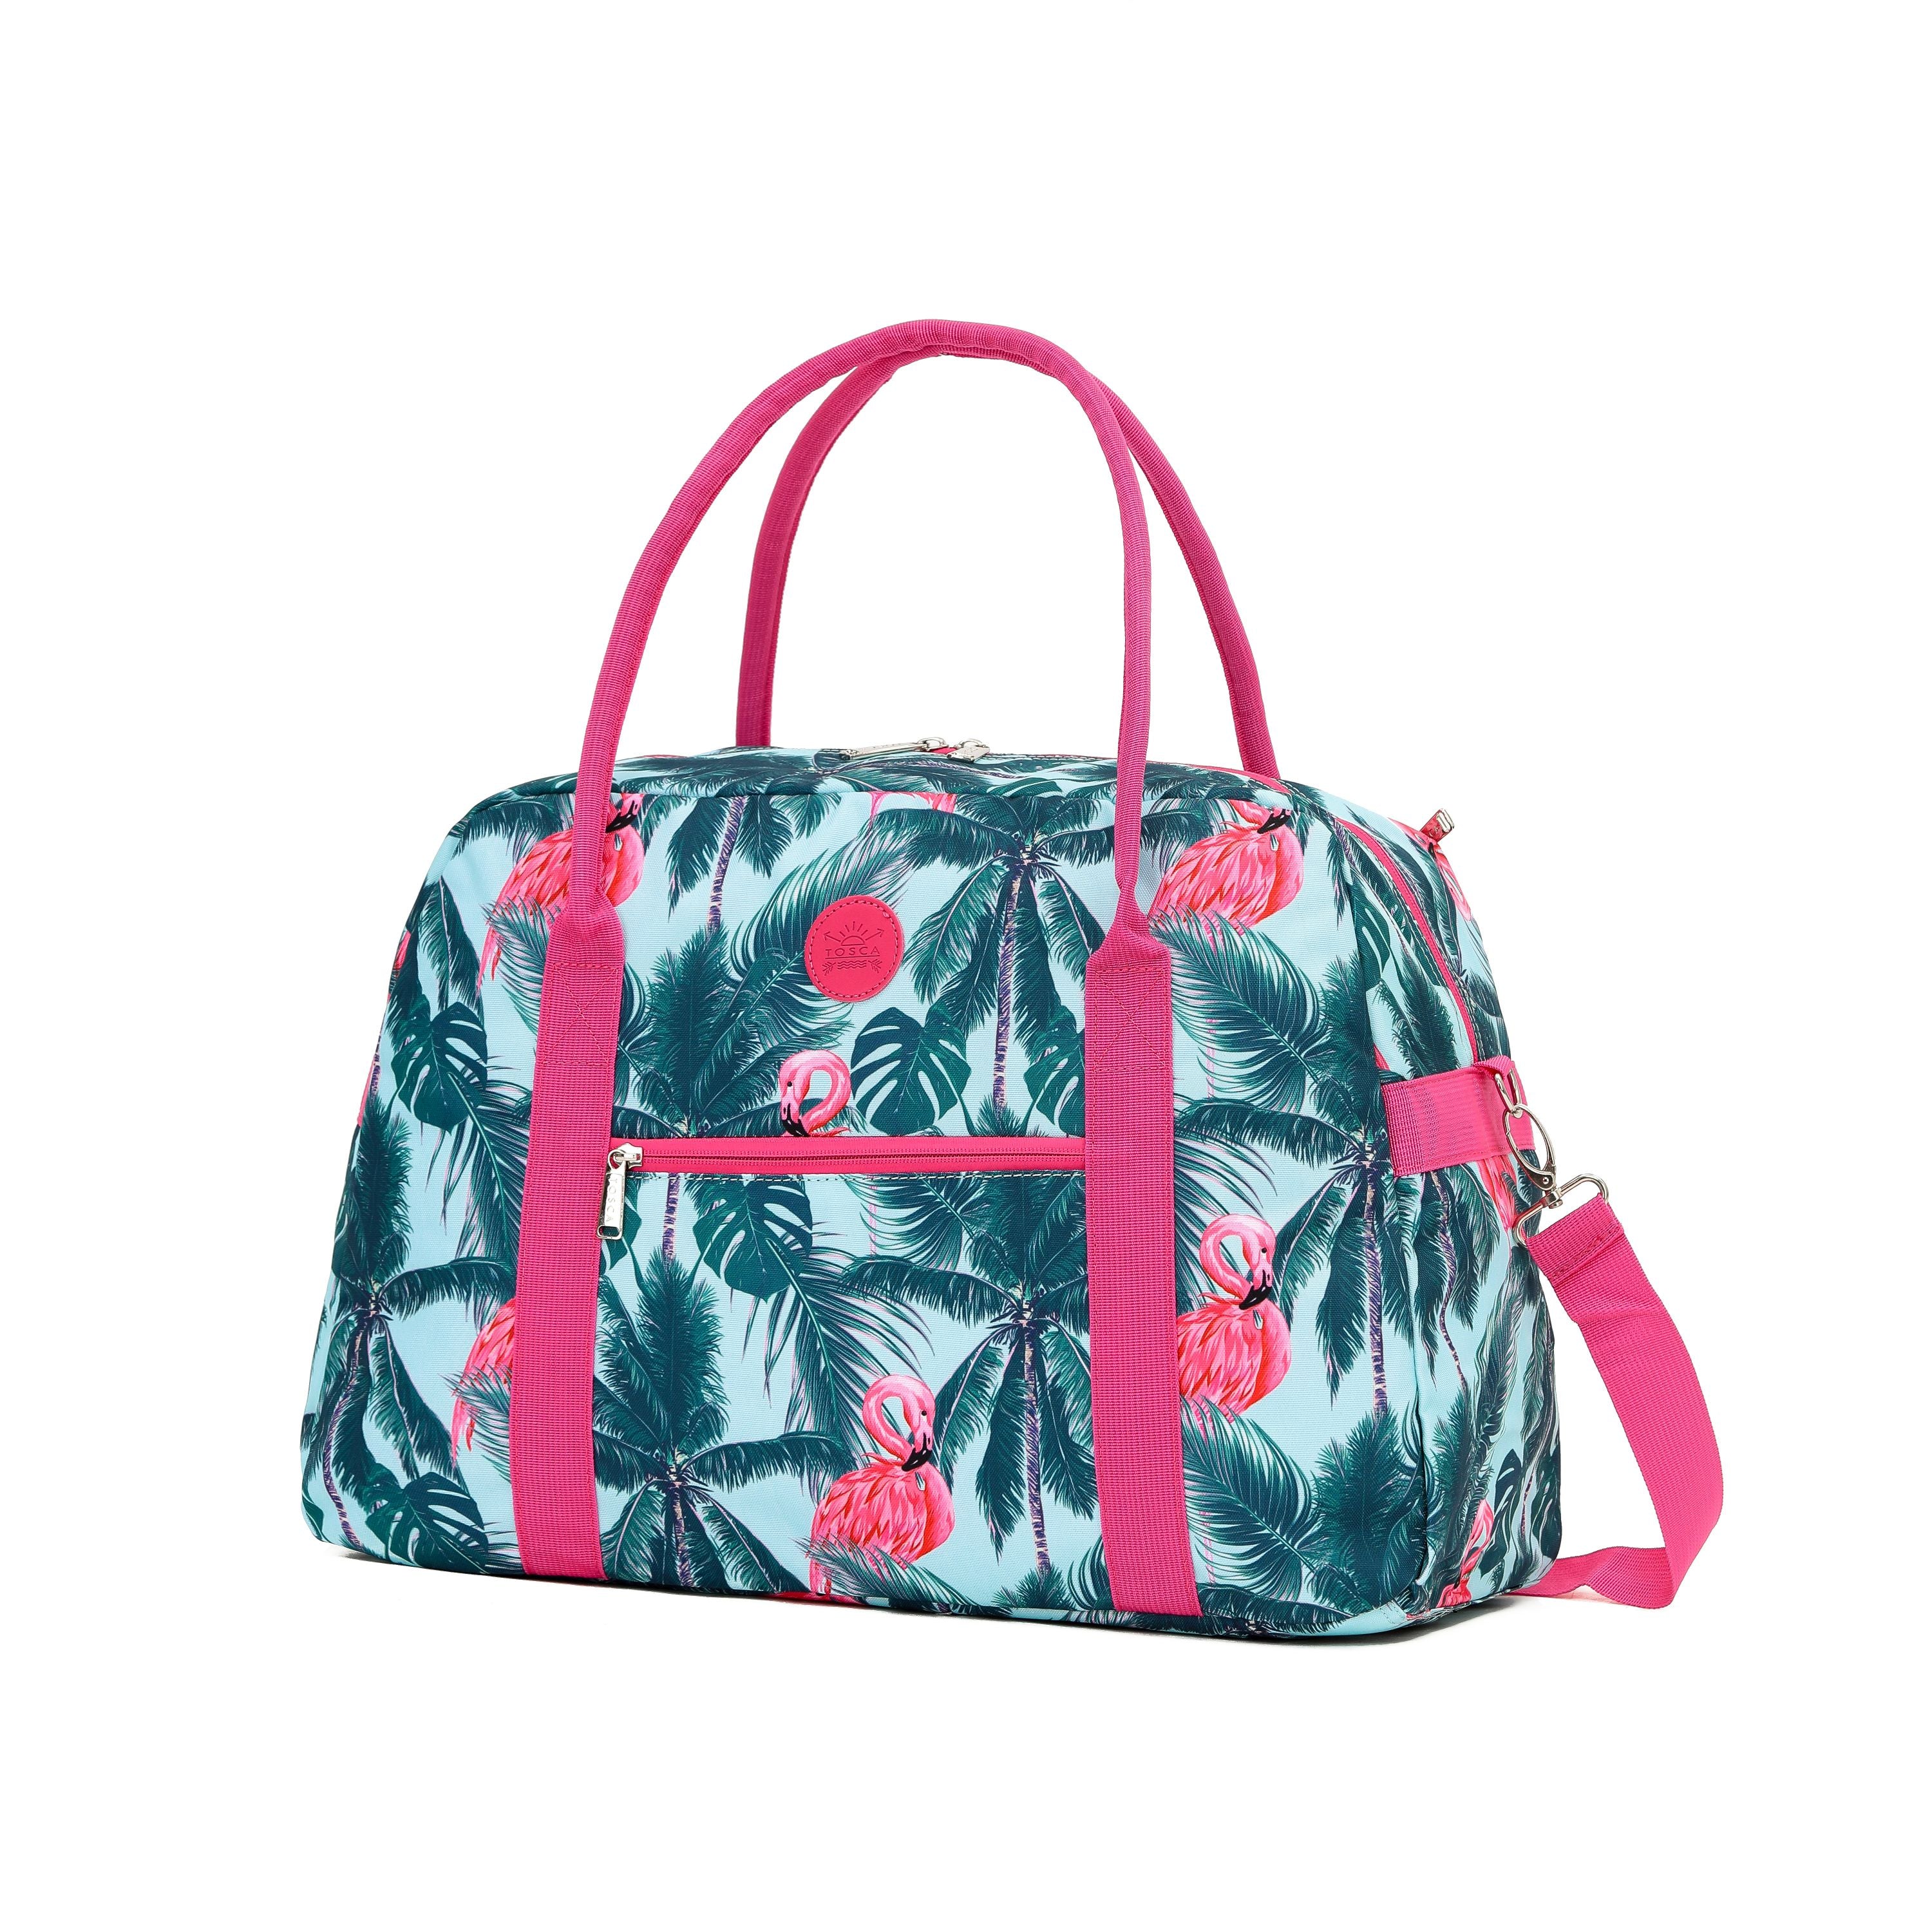 Tosca - TCA935 Fashion Tote/Duffle Bag - Flamingo